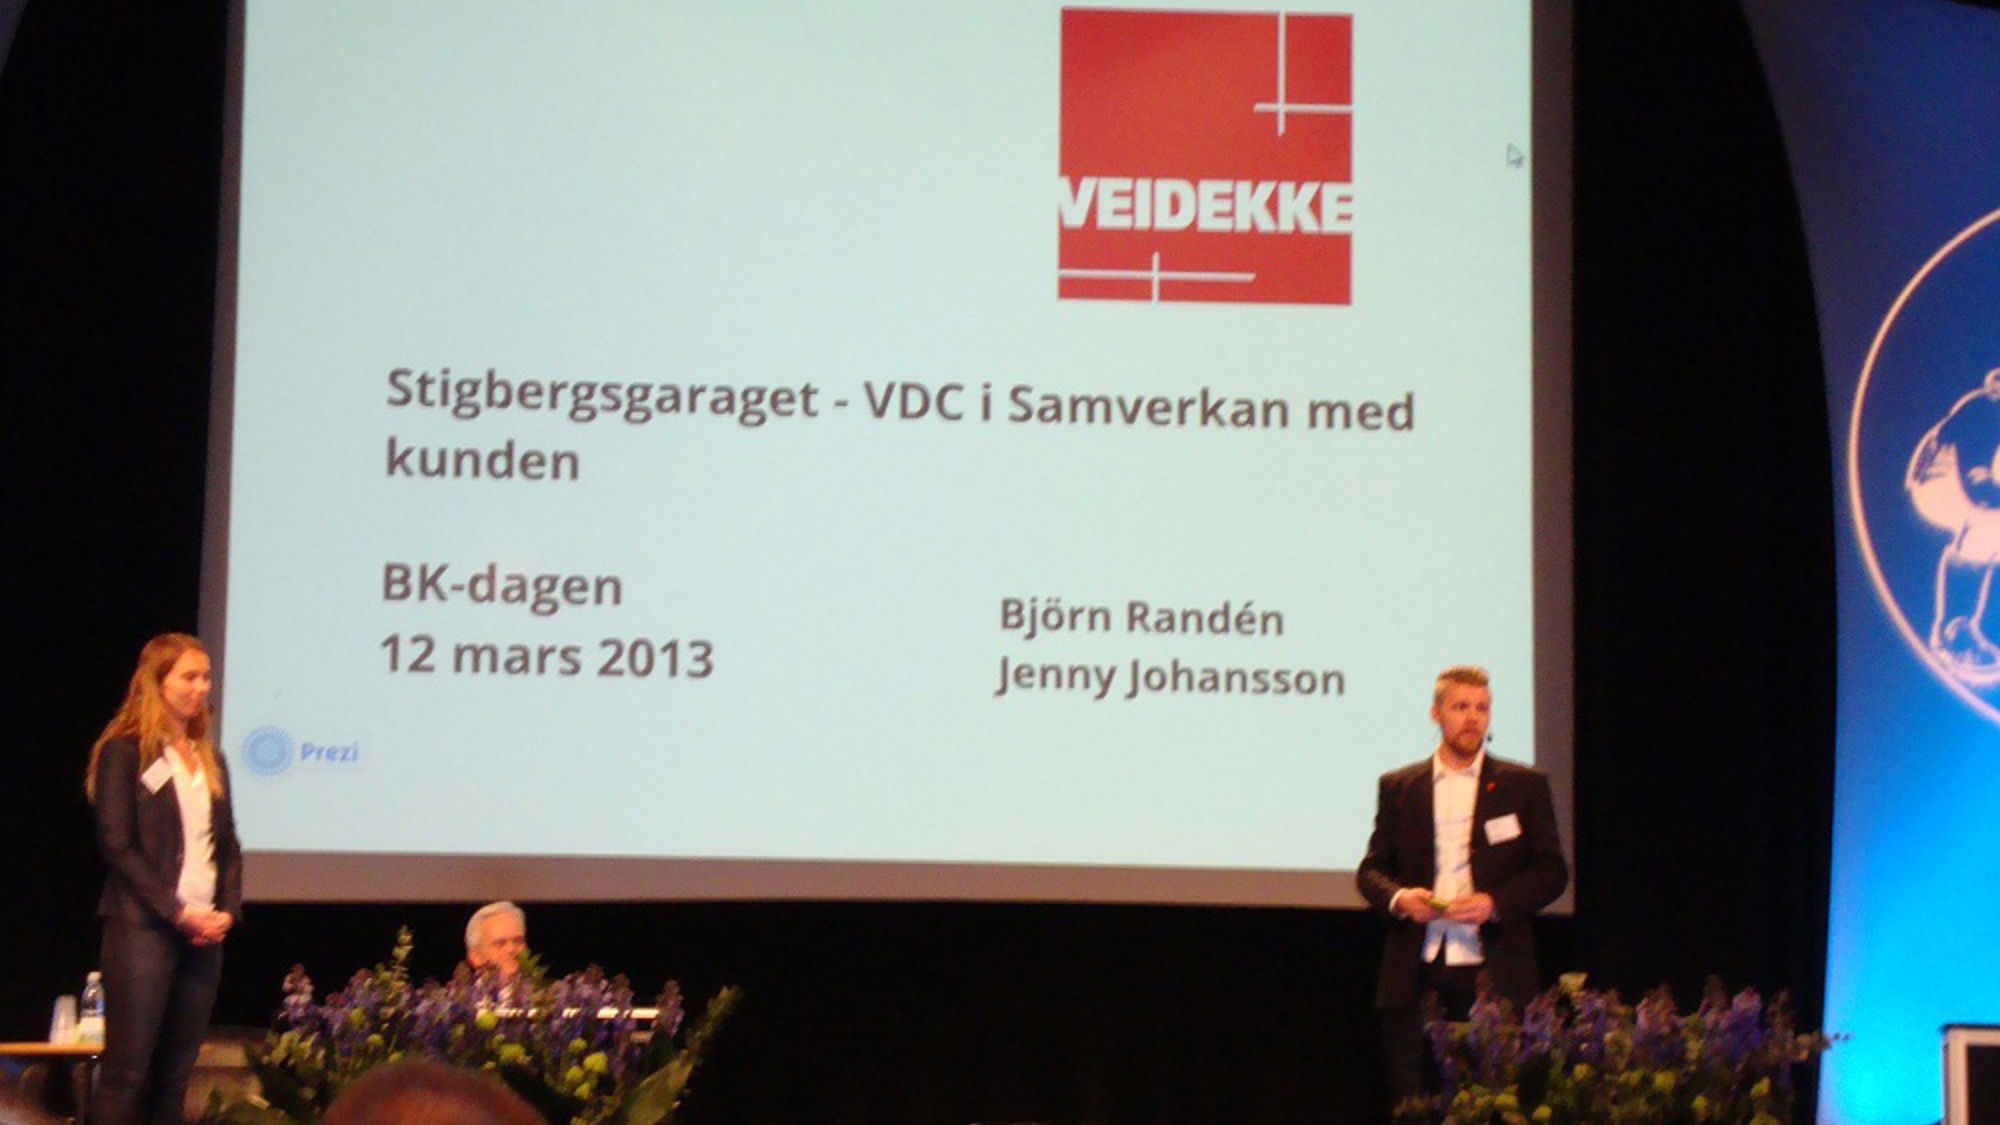 Veidekke höll ett grensesprengende föredrag om VDC och samverkan